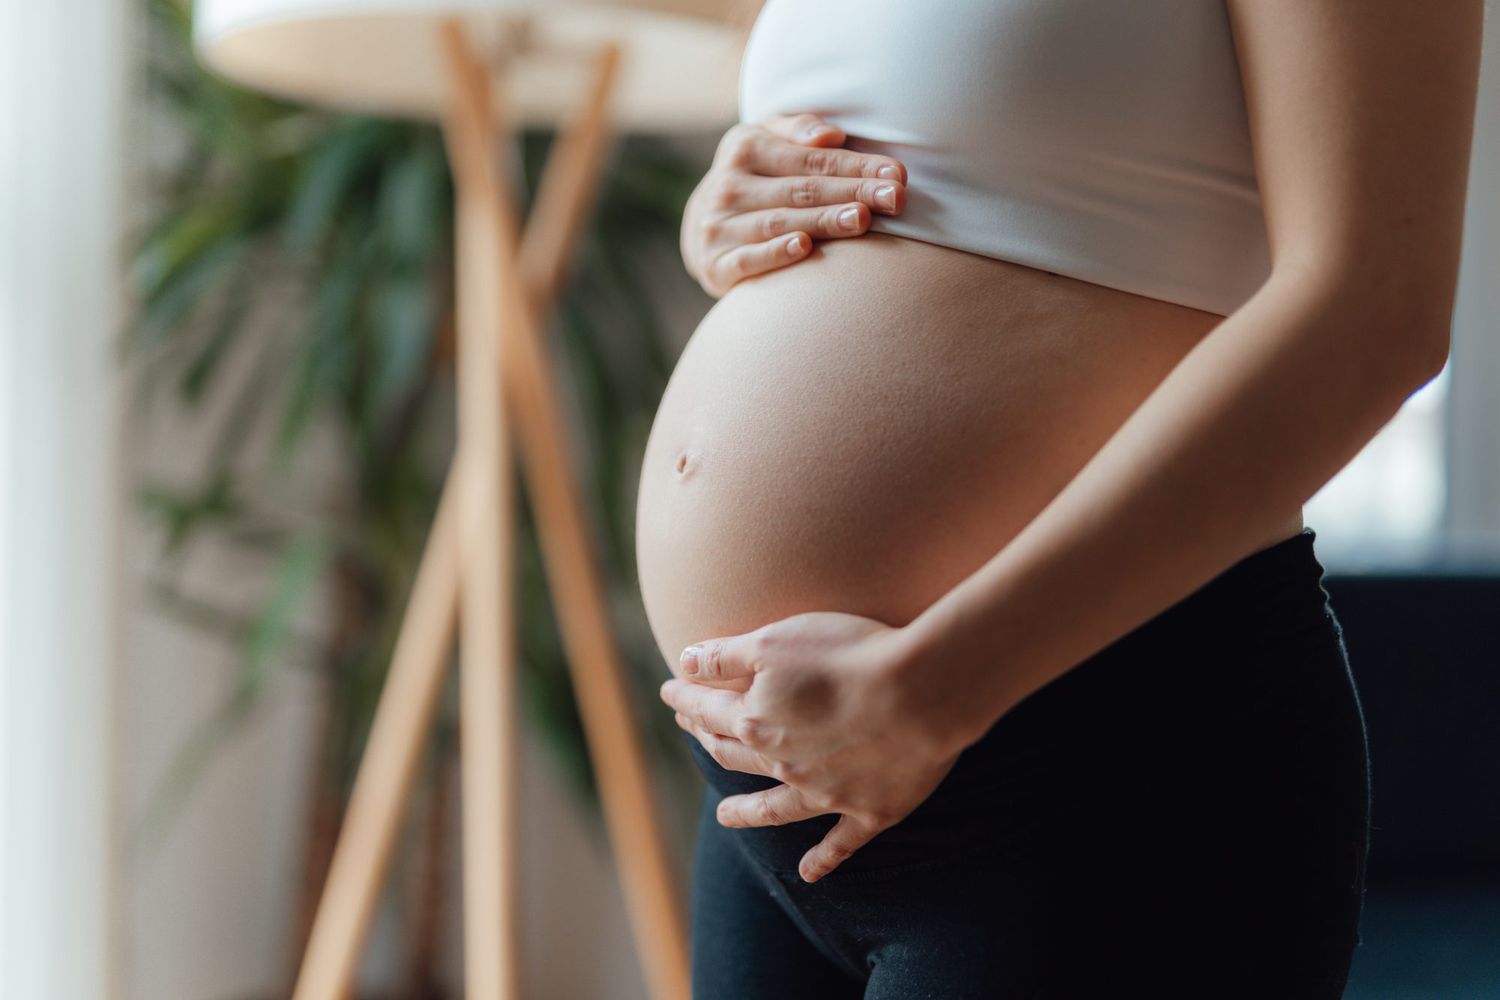 Nitroglycerin in pregnancy